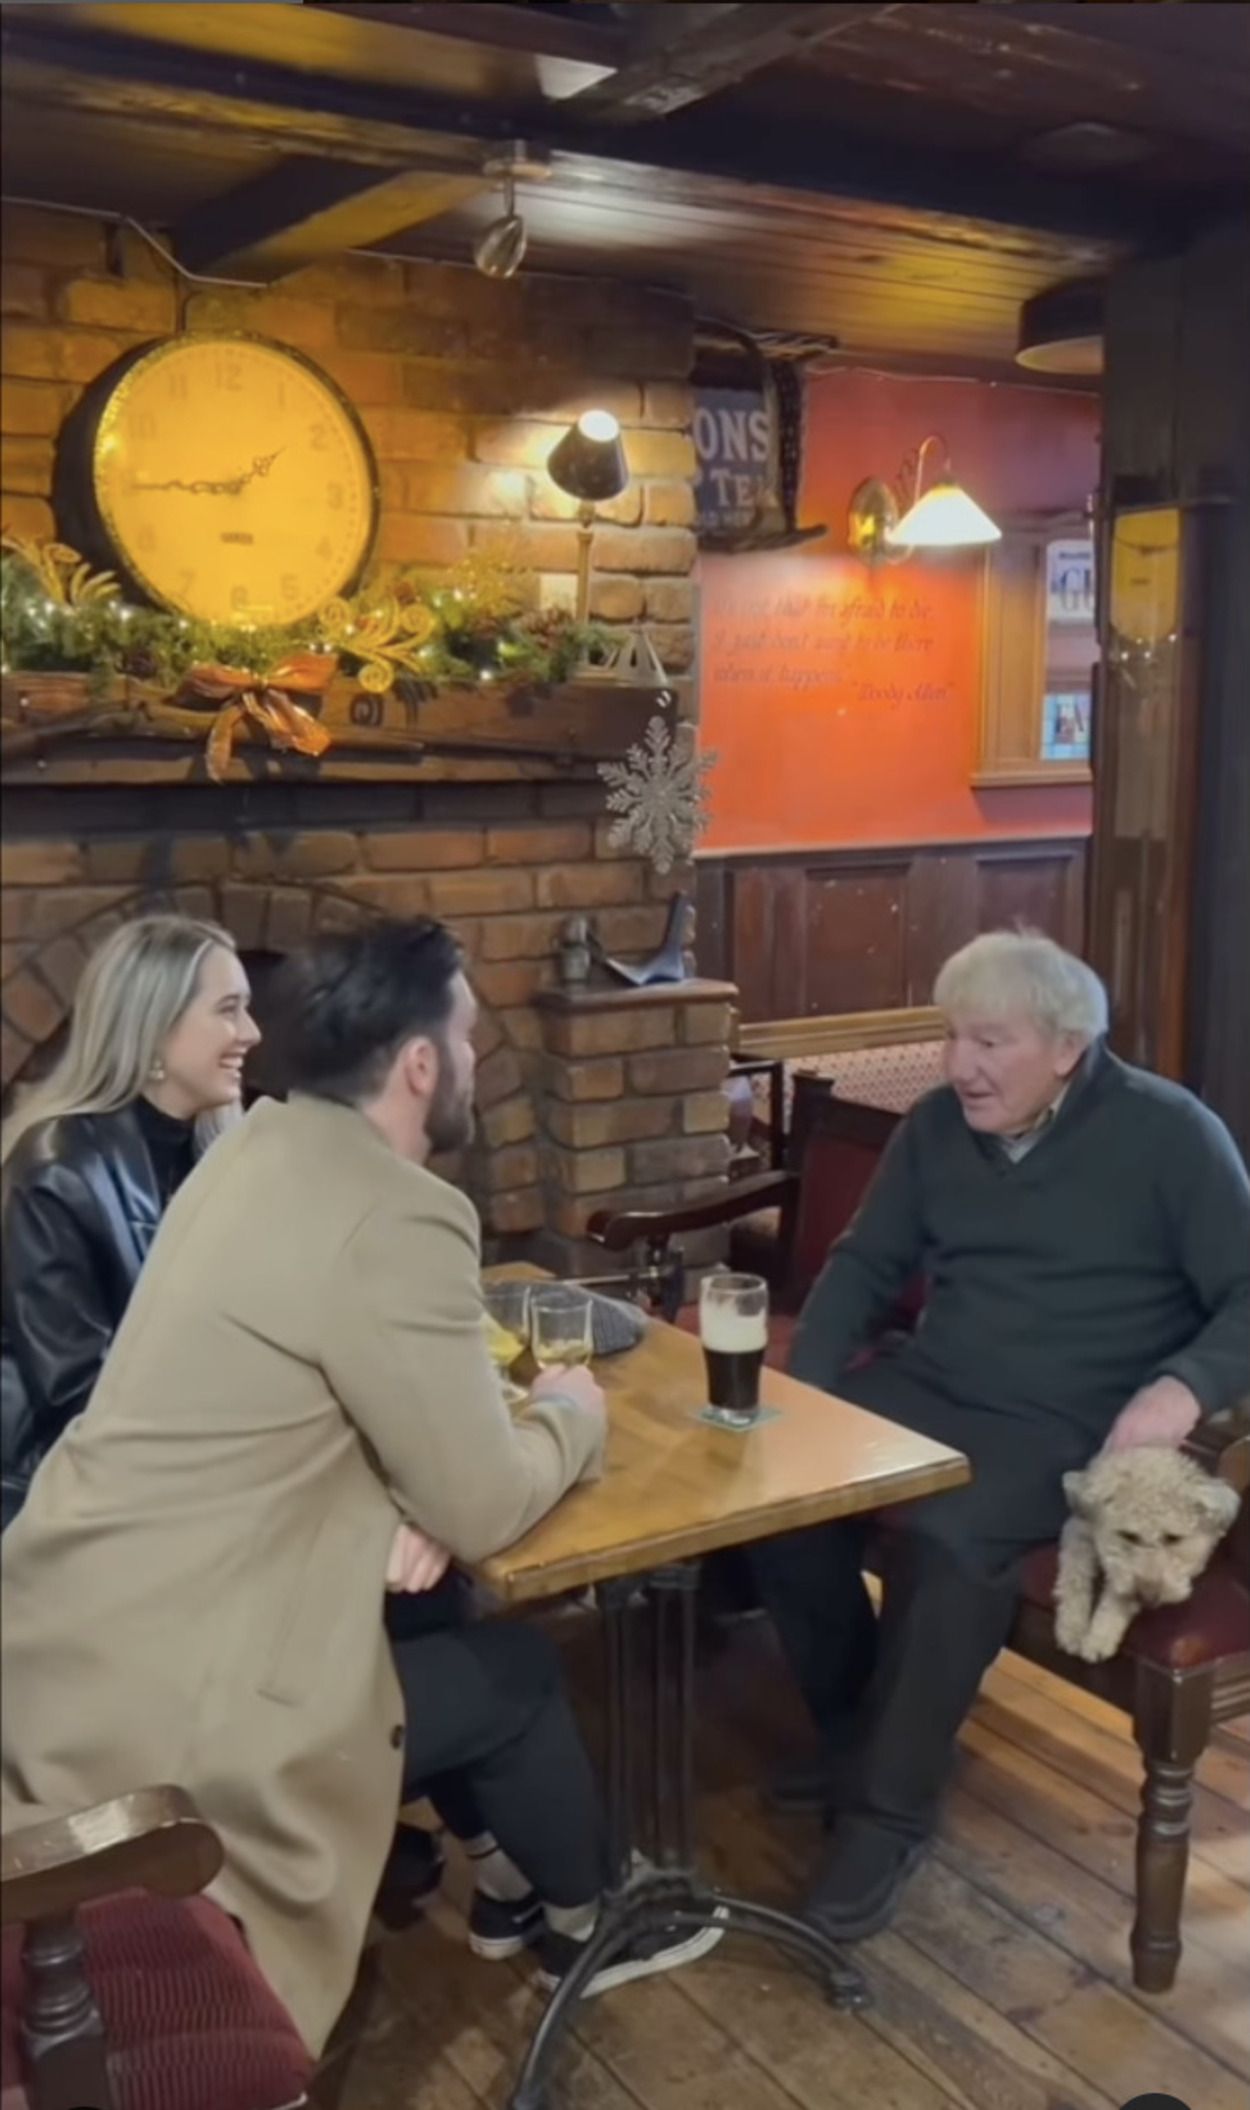 La iniciativa de Navidad de un bar de Irlanda para luchar contra la soledad: "Ven a charlar"